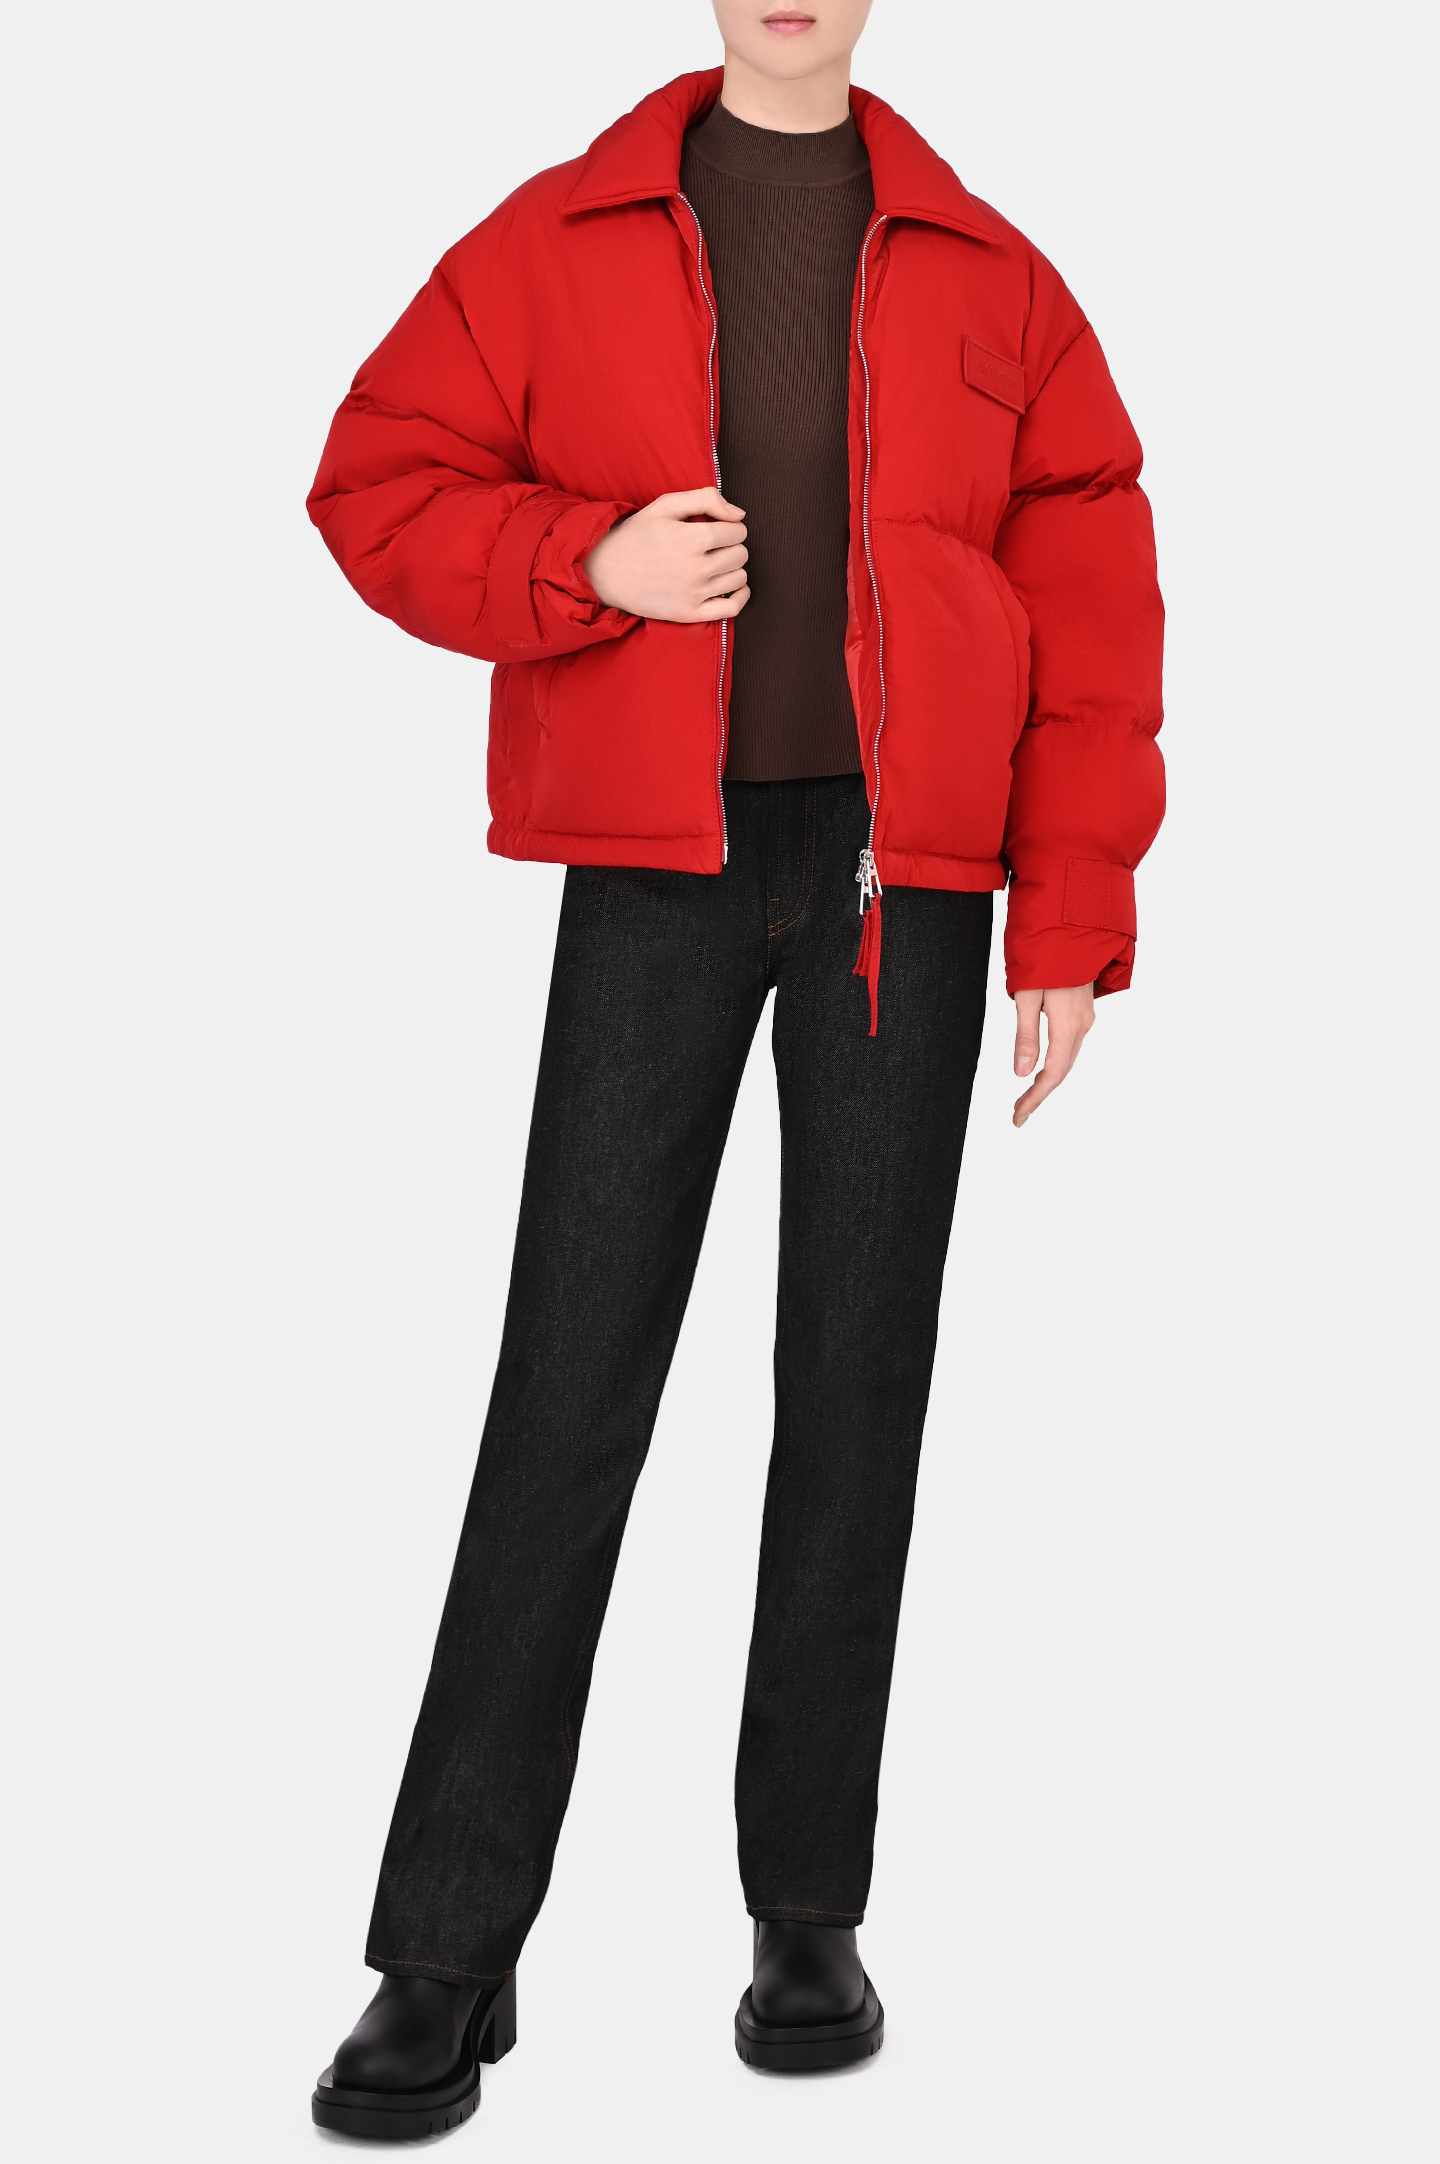 Куртка JACQUEMUS 213BL003, цвет: Красный, Женский